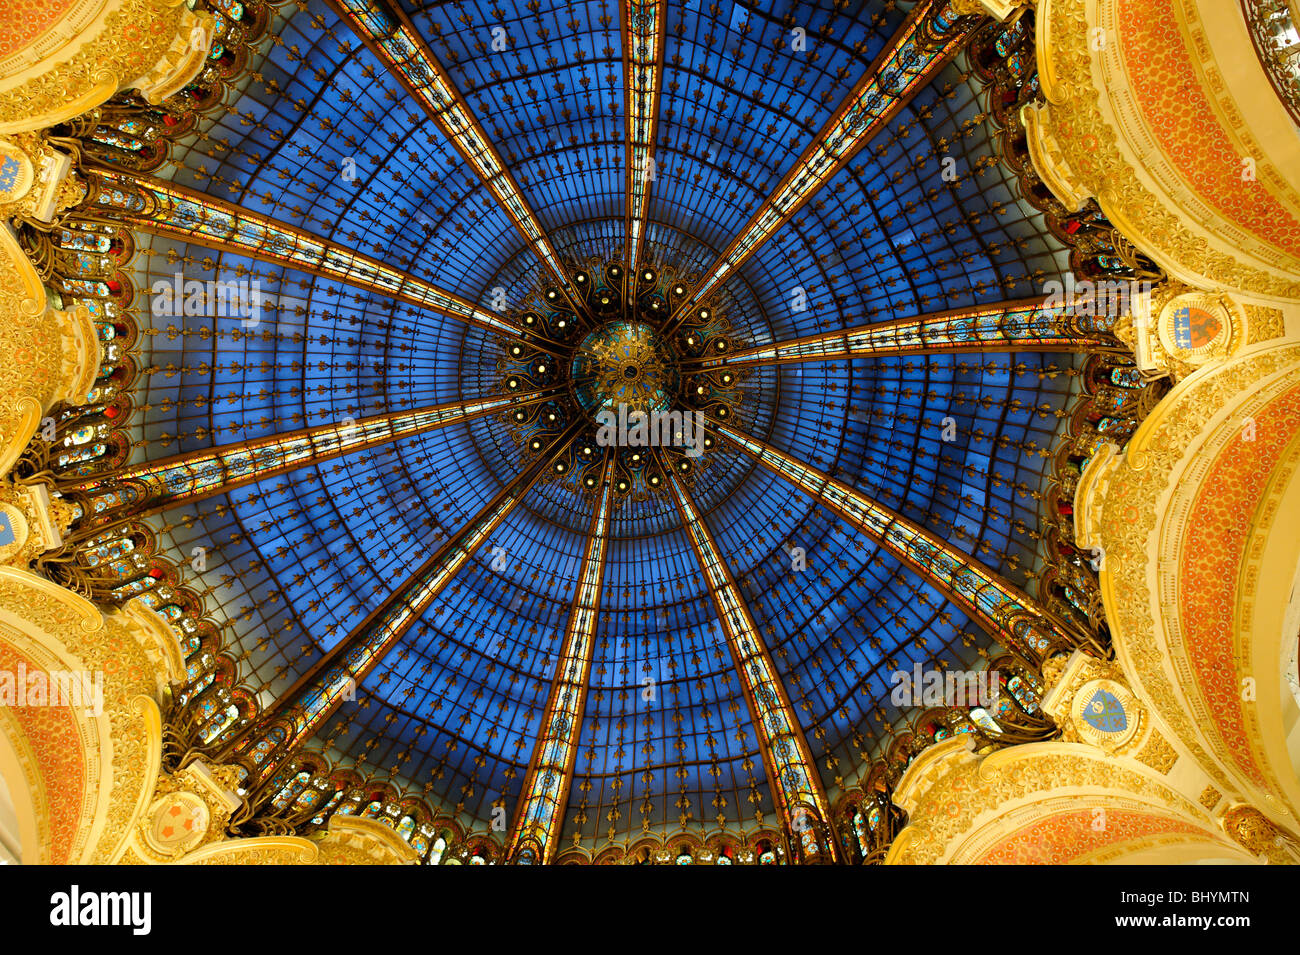 La cúpula de las Galerías Lafayette, París, mostrando el azul del cielo nocturno. Foto de stock